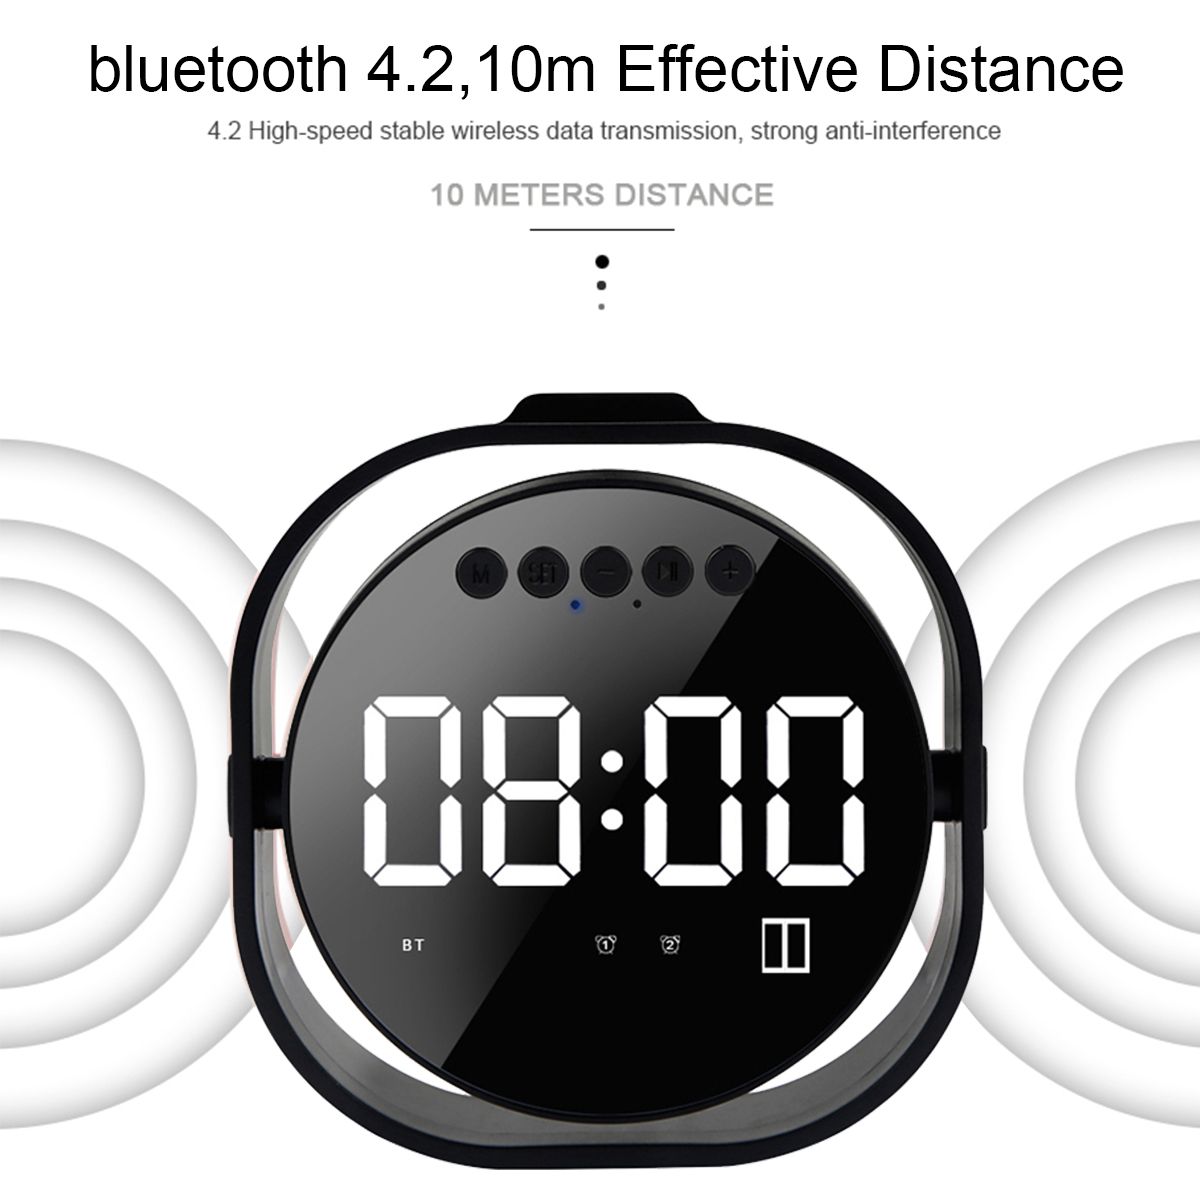 LED-Display-Dual-Alarm-Clock-Dual-Units-Wireless-bluetooth-Bass-Speaker-FM-Radio-USB-Port-Mirror-Spe-1490344